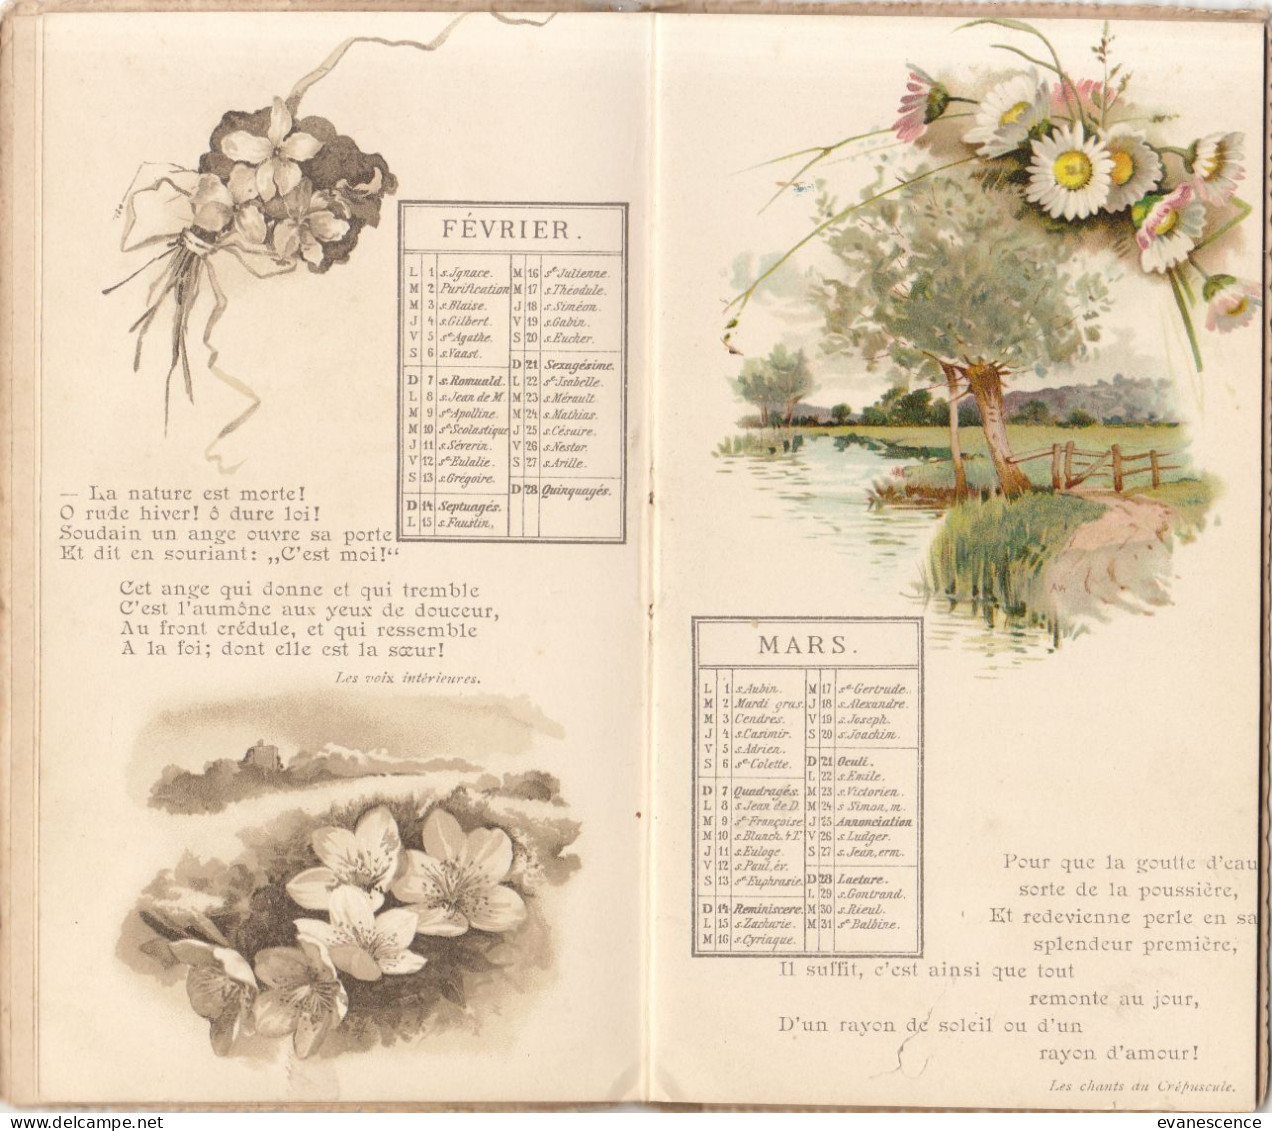 Calendrier Victor Hugo De 1897 : RARE    ///   Ref. Mai 23 - Groot Formaat: ...-1900